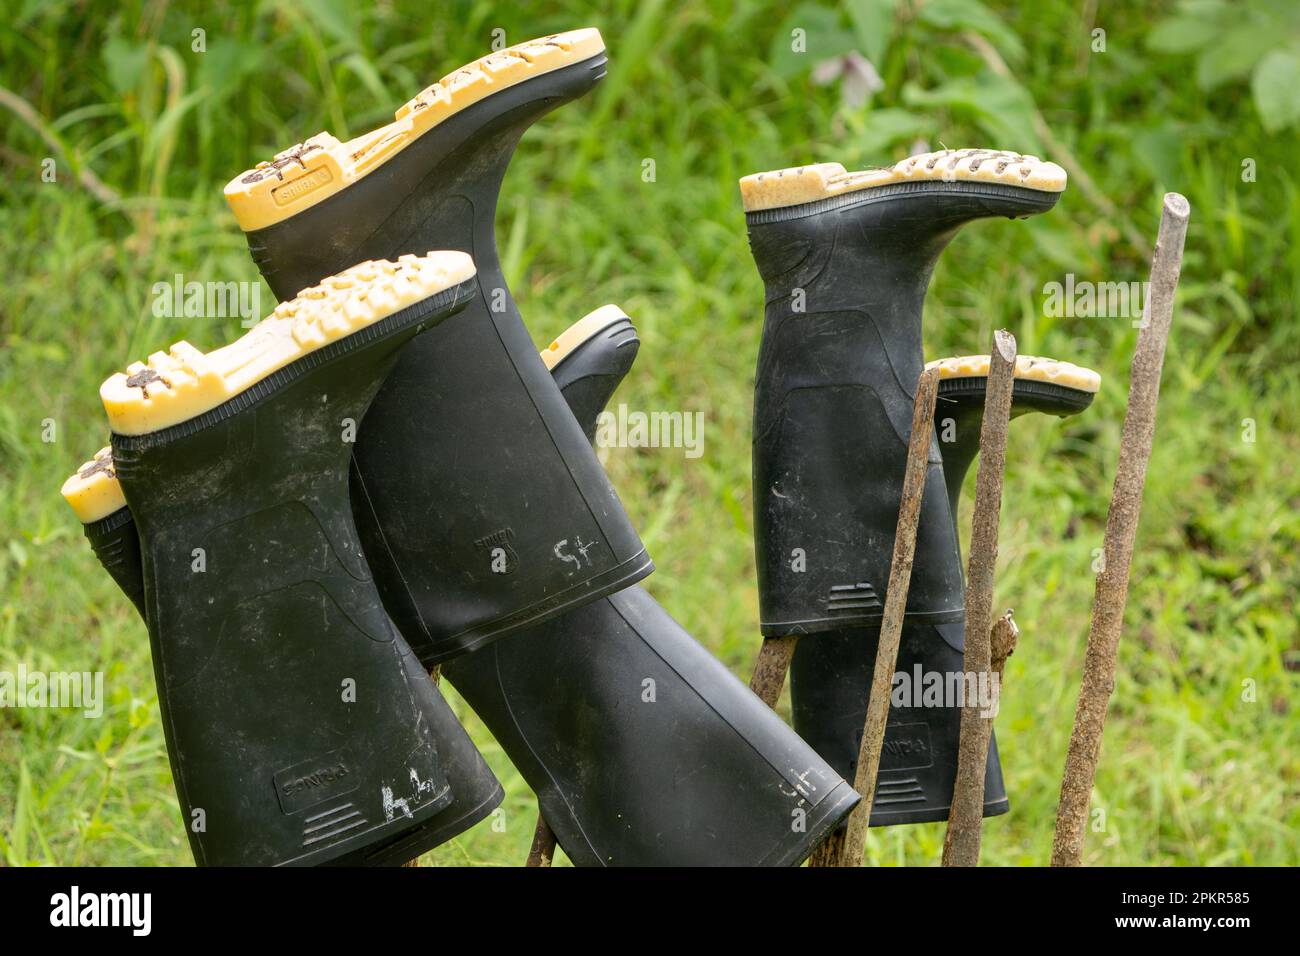 Les bottes de gommbots sont laissées au sec après une matinée d'exploration de l'Amazonie péruvienne. Ces équipements sont considérés comme essentiels. Banque D'Images